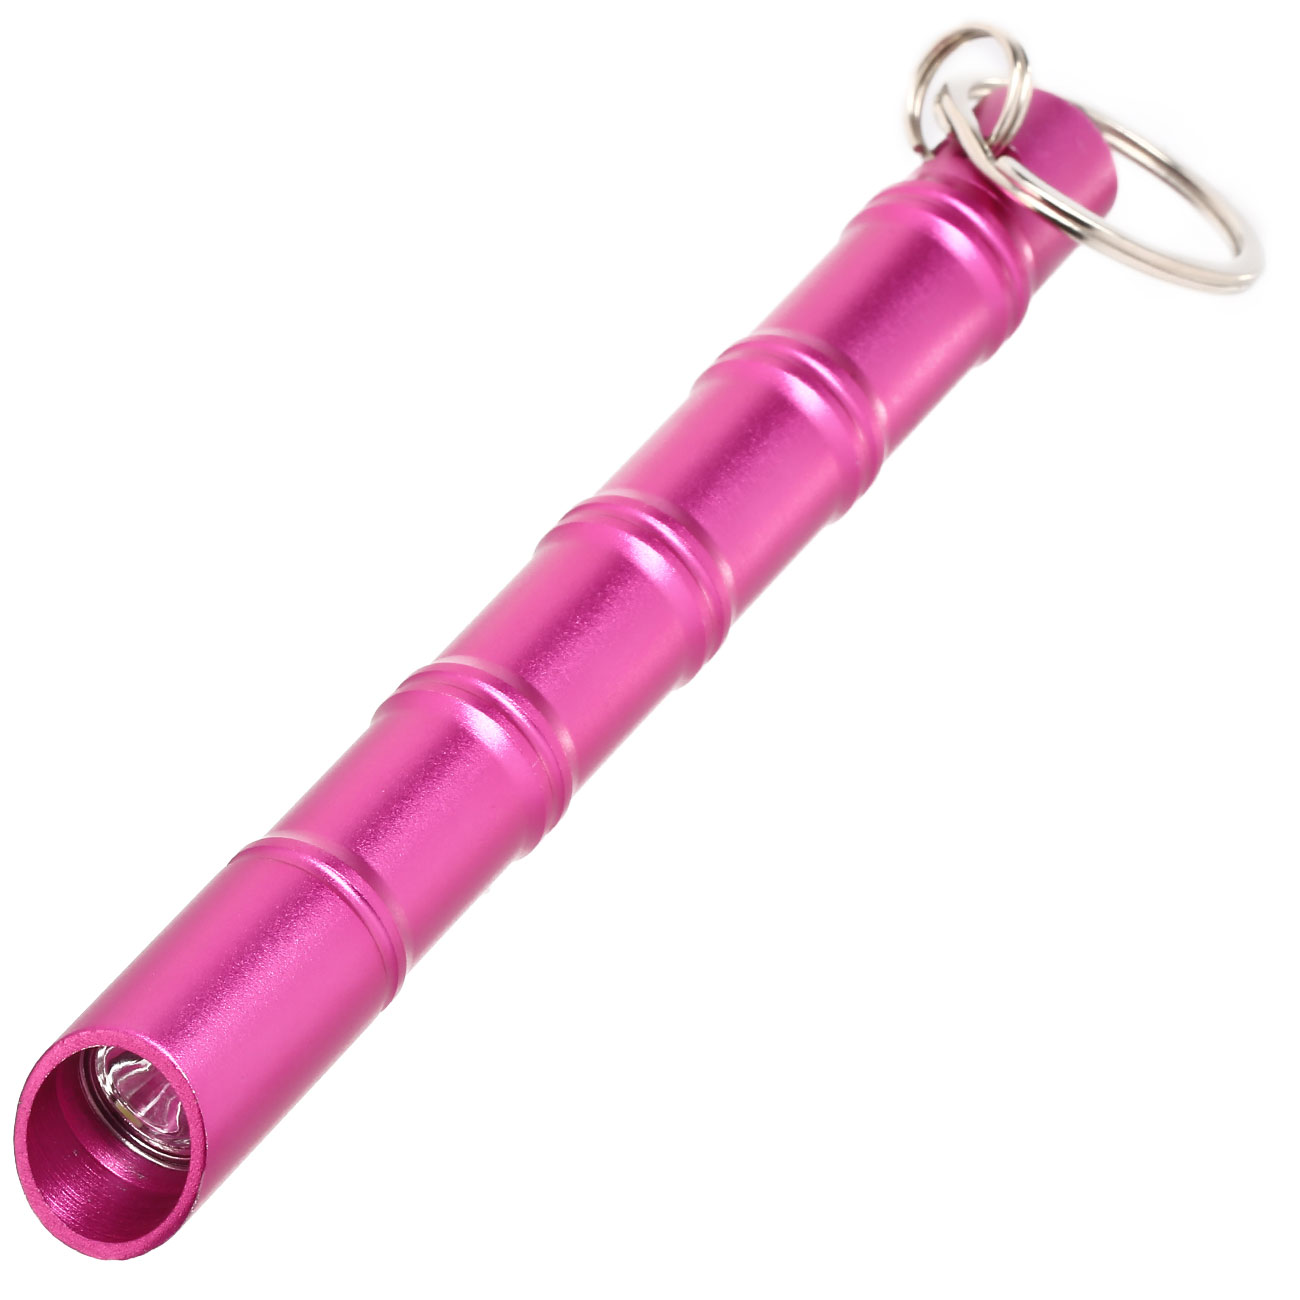 Kubotan Light Defender mit integrieter LED-Taschenlampe und Schlüsselring pink Bild 1